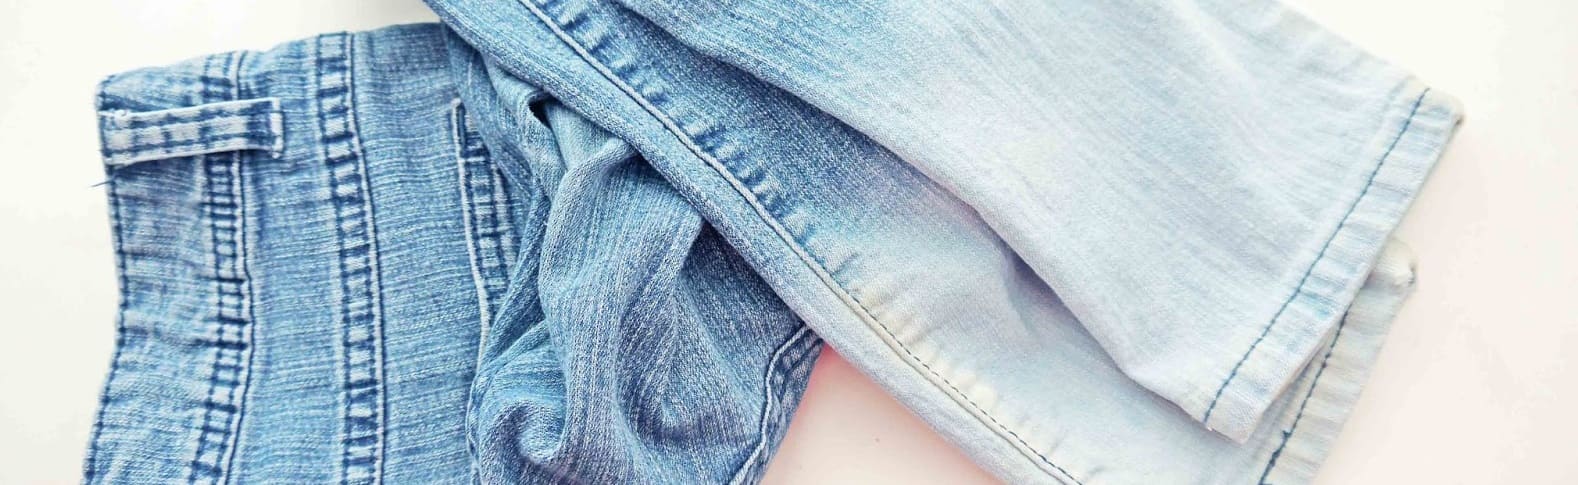 Вырежьте полоску из джинсовой ткани и сметайте ее края, чтобы сделать нечто прекрасное!